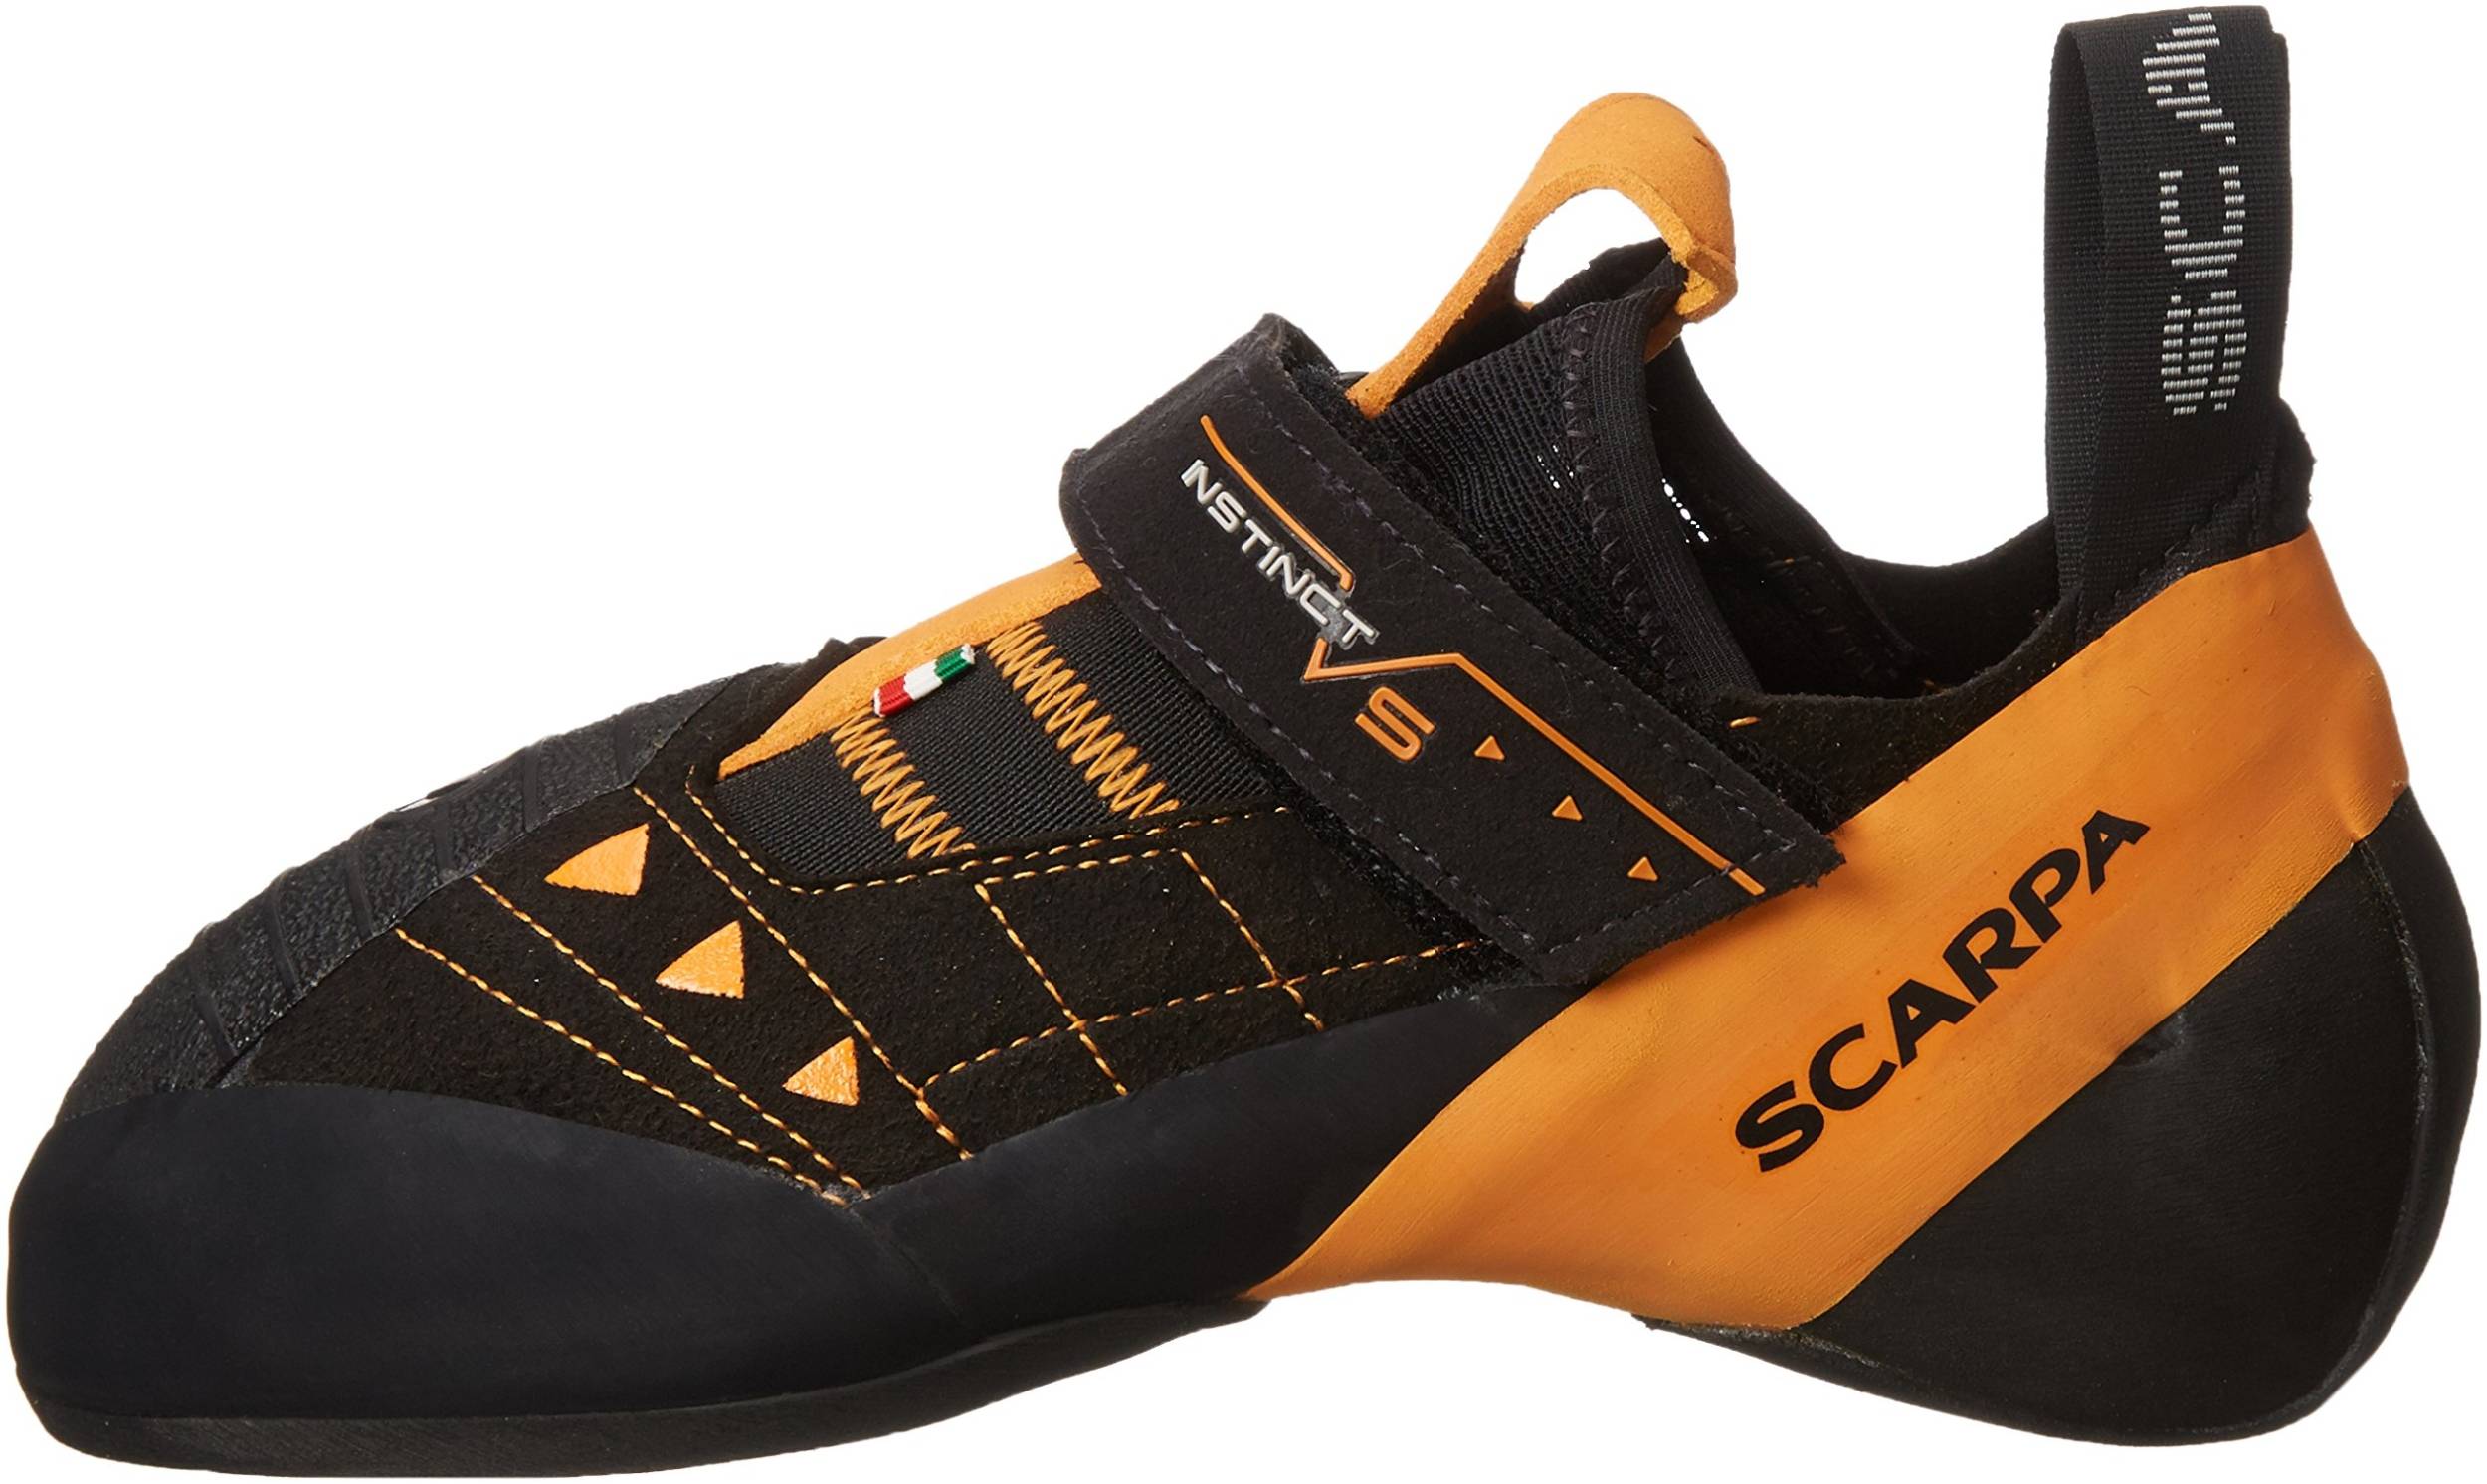 Scarpa Men's Instinct VS Climbing Shoes Black FV 9 UK